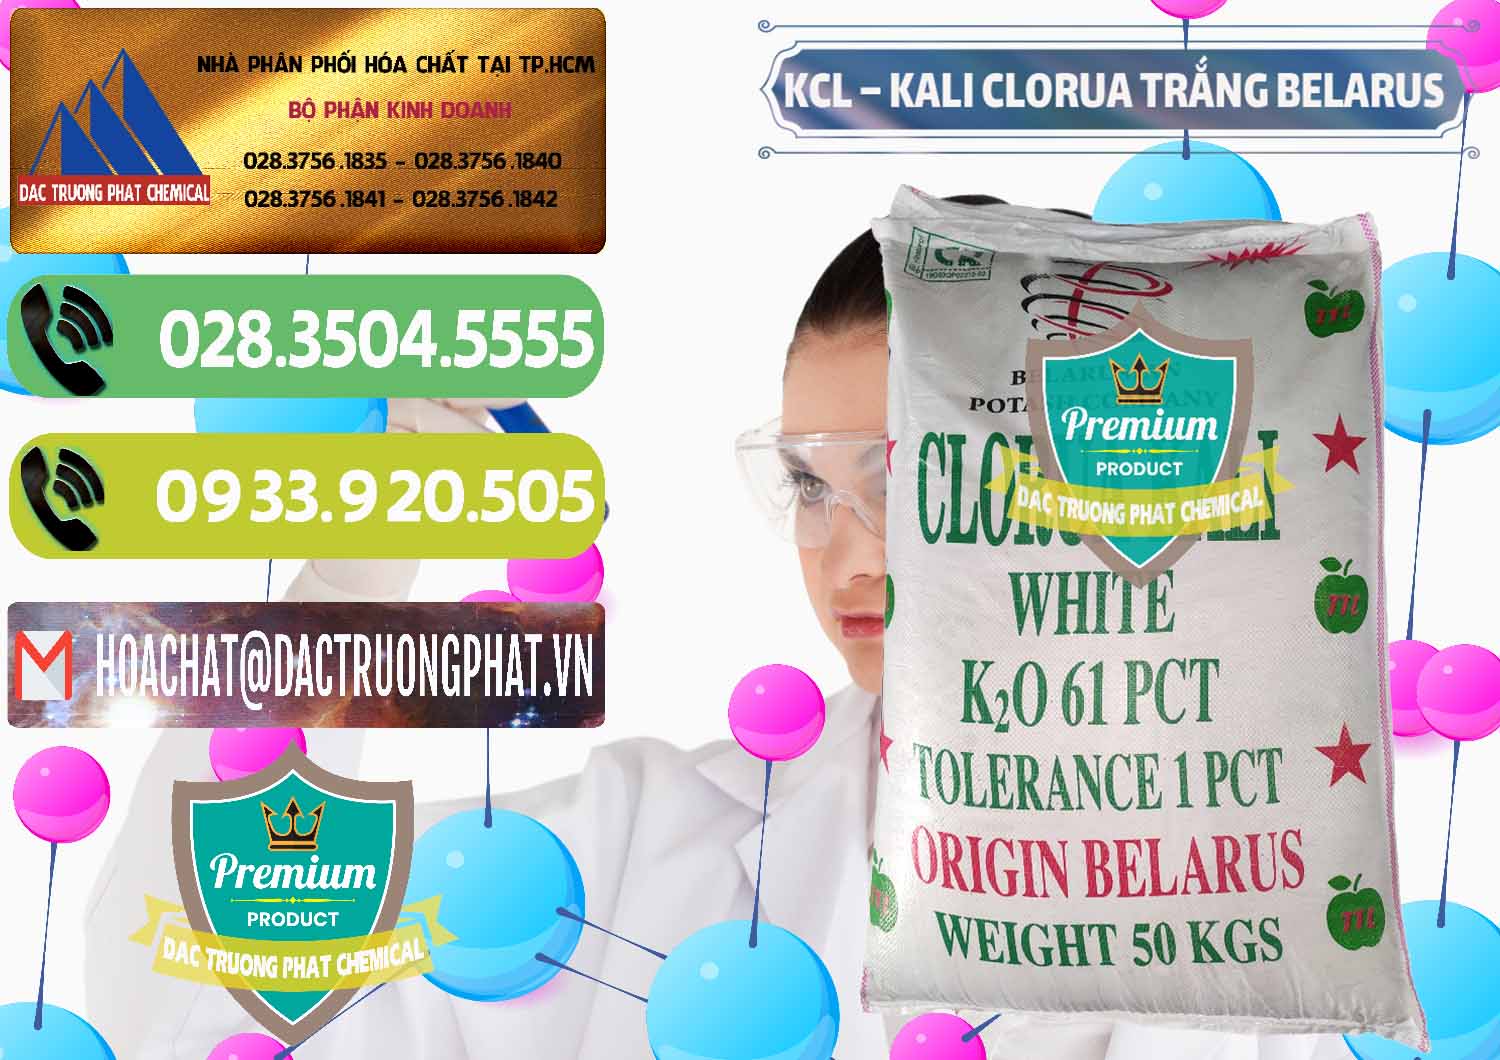 Cty chuyên bán ( cung cấp ) KCL – Kali Clorua Trắng Belarus - 0085 - Công ty bán và phân phối hóa chất tại TP.HCM - hoachatmientay.vn